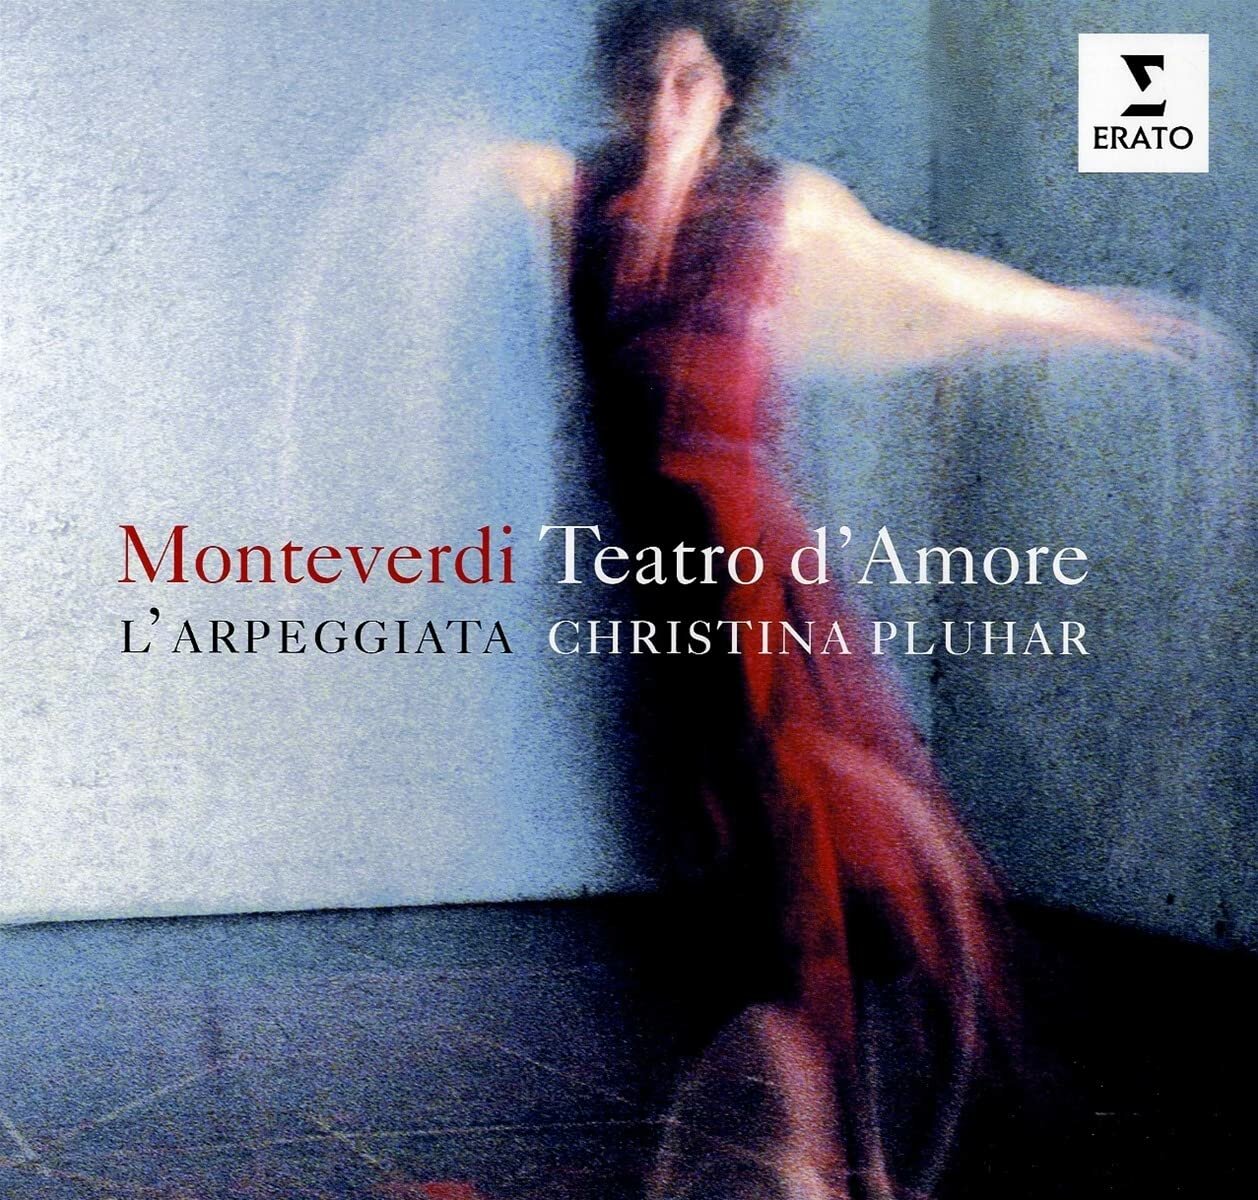 L'Arpeggiata "Виниловая пластинка L'Arpeggiata Monteverdi Teatro d'Amore"